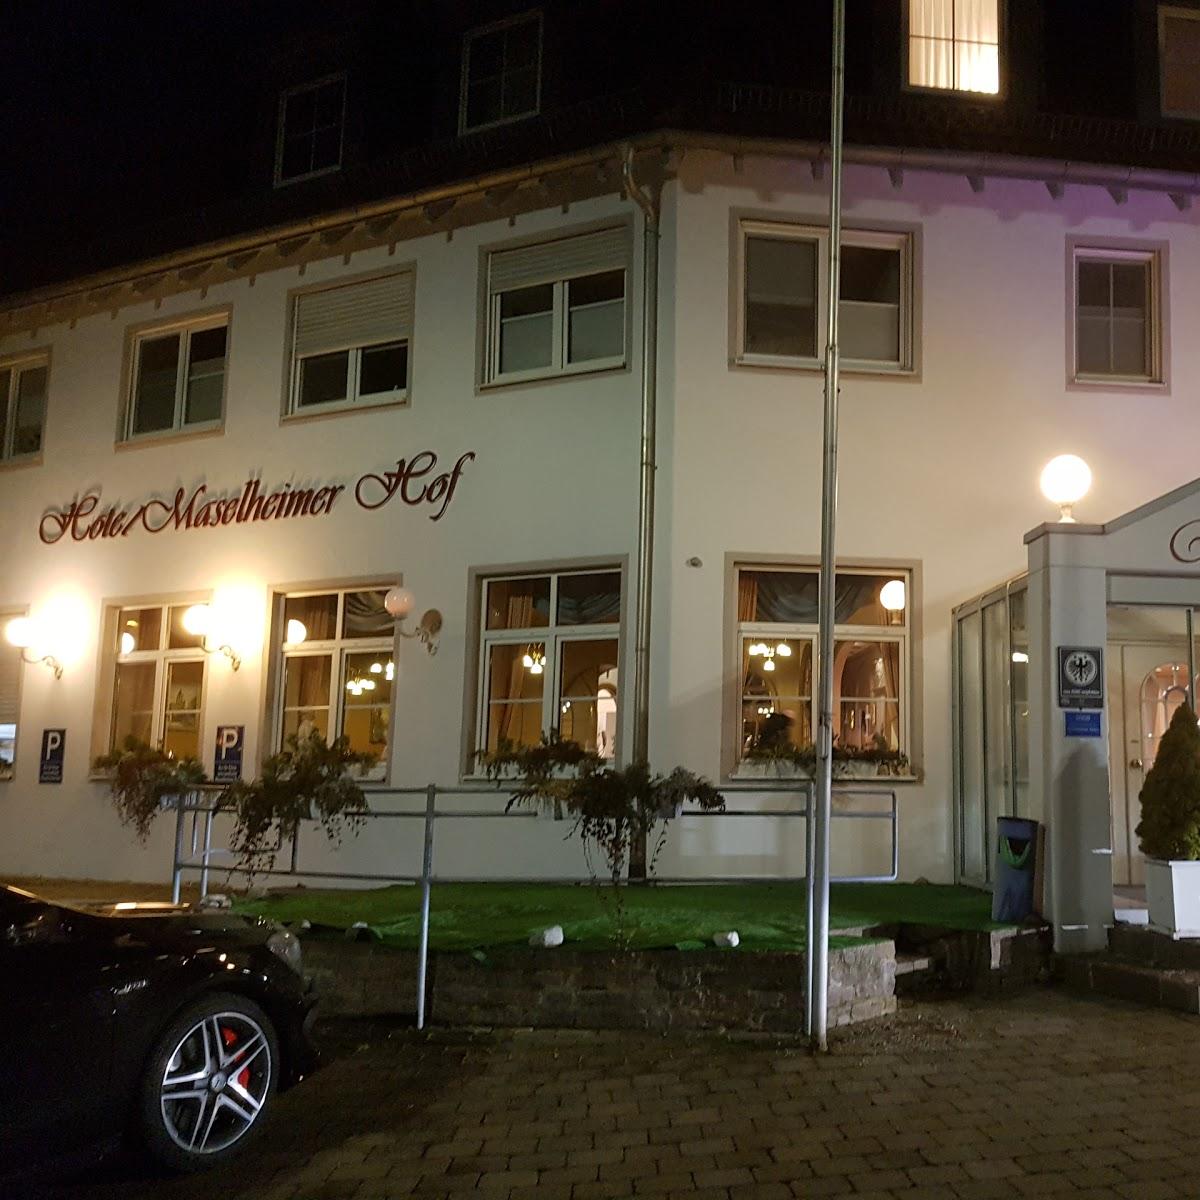 Restaurant "Hotel er Hof" in Maselheim